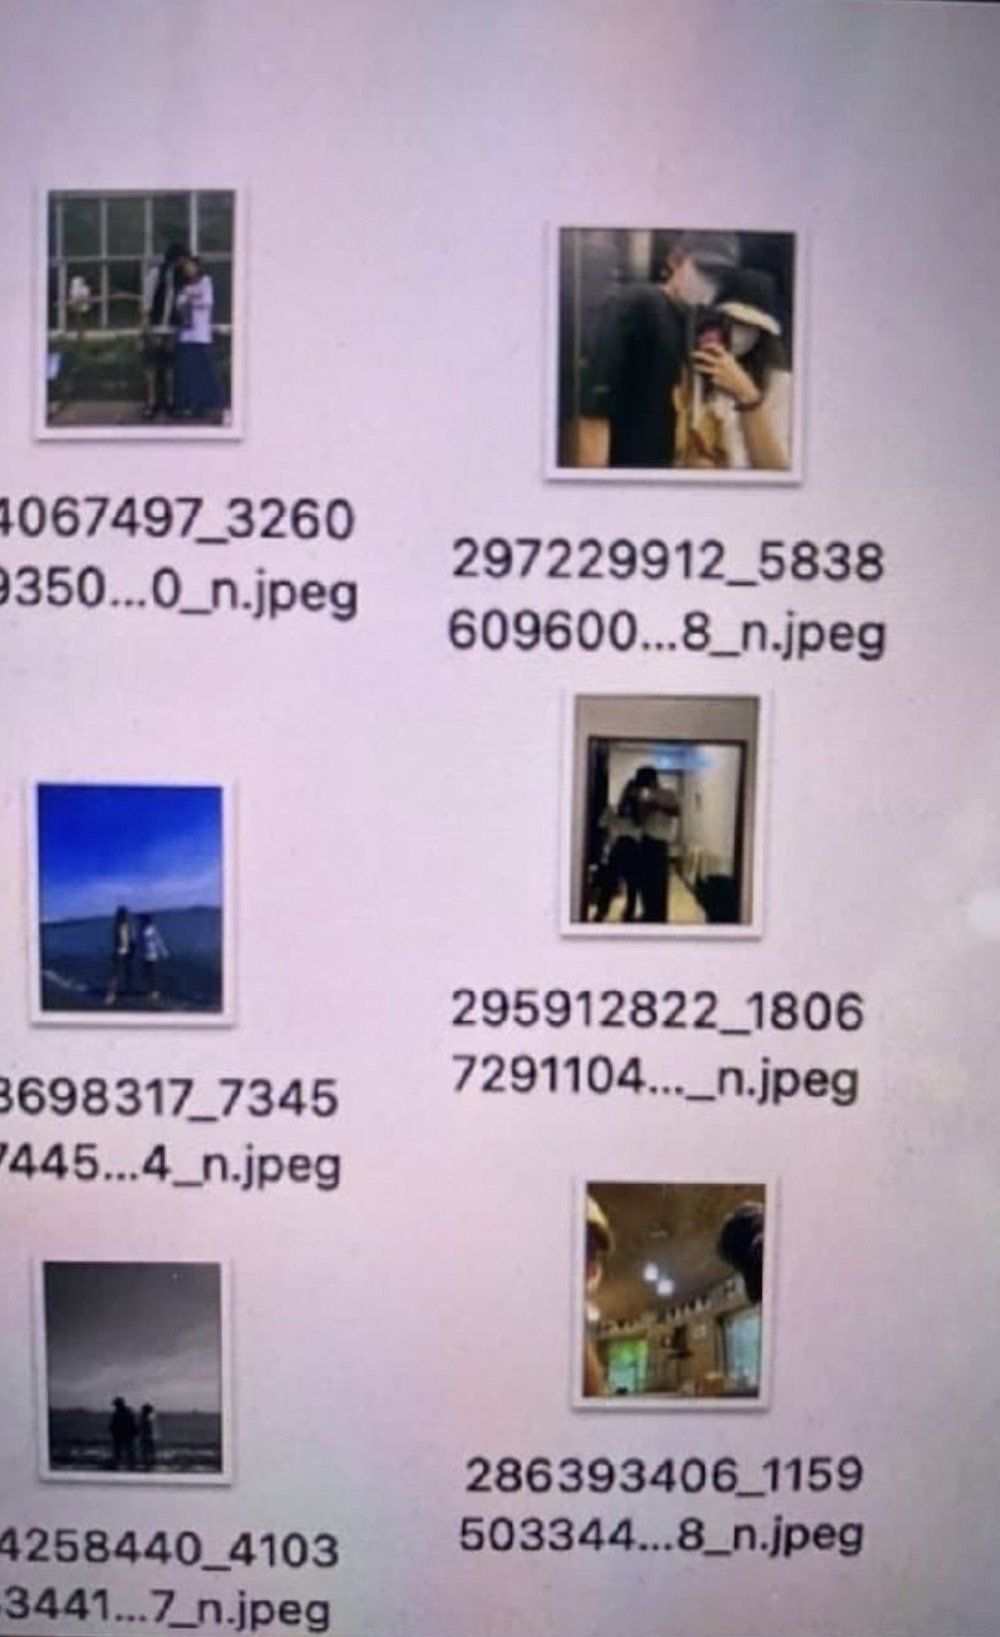 網民之前公開小圖的頁面，賣關子指有大量的VJ密照。